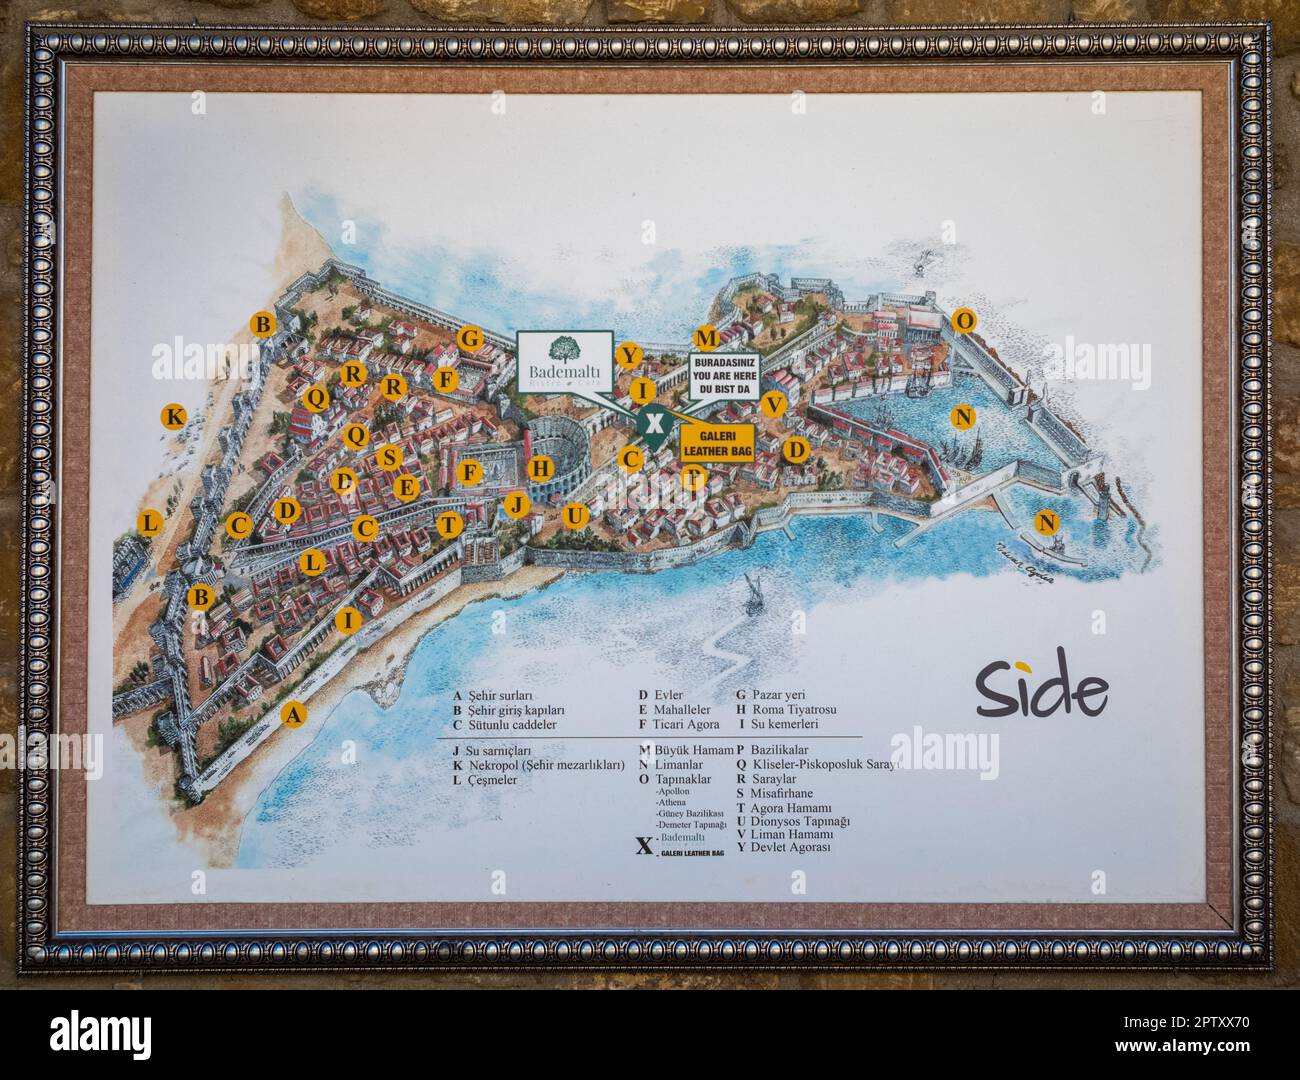 Una mappa turistica dipinta a mano di Side nella provincia di Antalya in Turchia (Turkiye). La mappa elenca tutte le attrazioni principali dell'antica città romana e quello che è ora Foto Stock